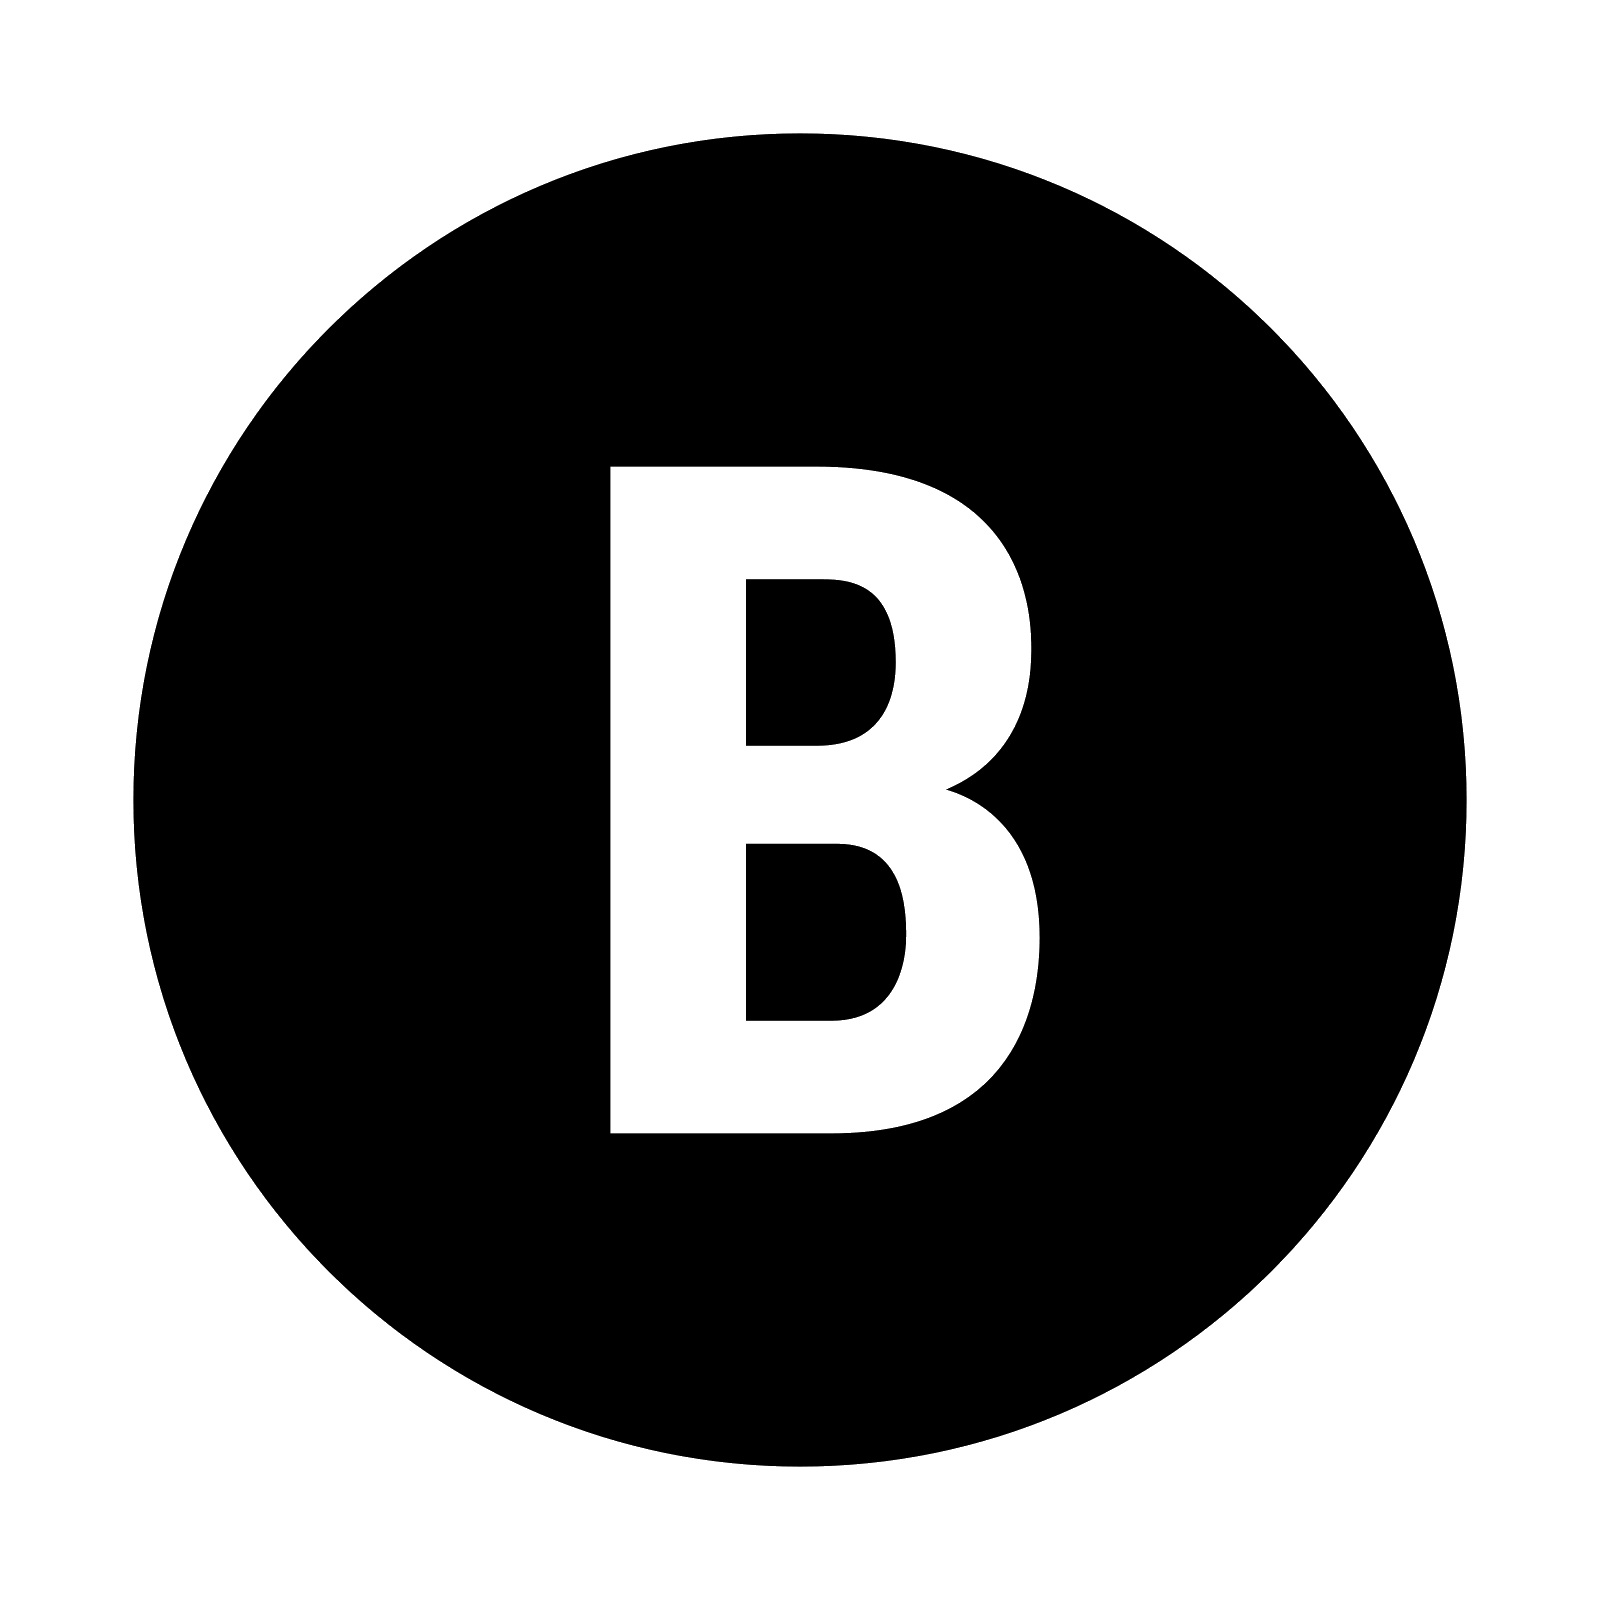 Black Letter B and Y Logo - Xbox B Icono - descarga gratuita, PNG y vector